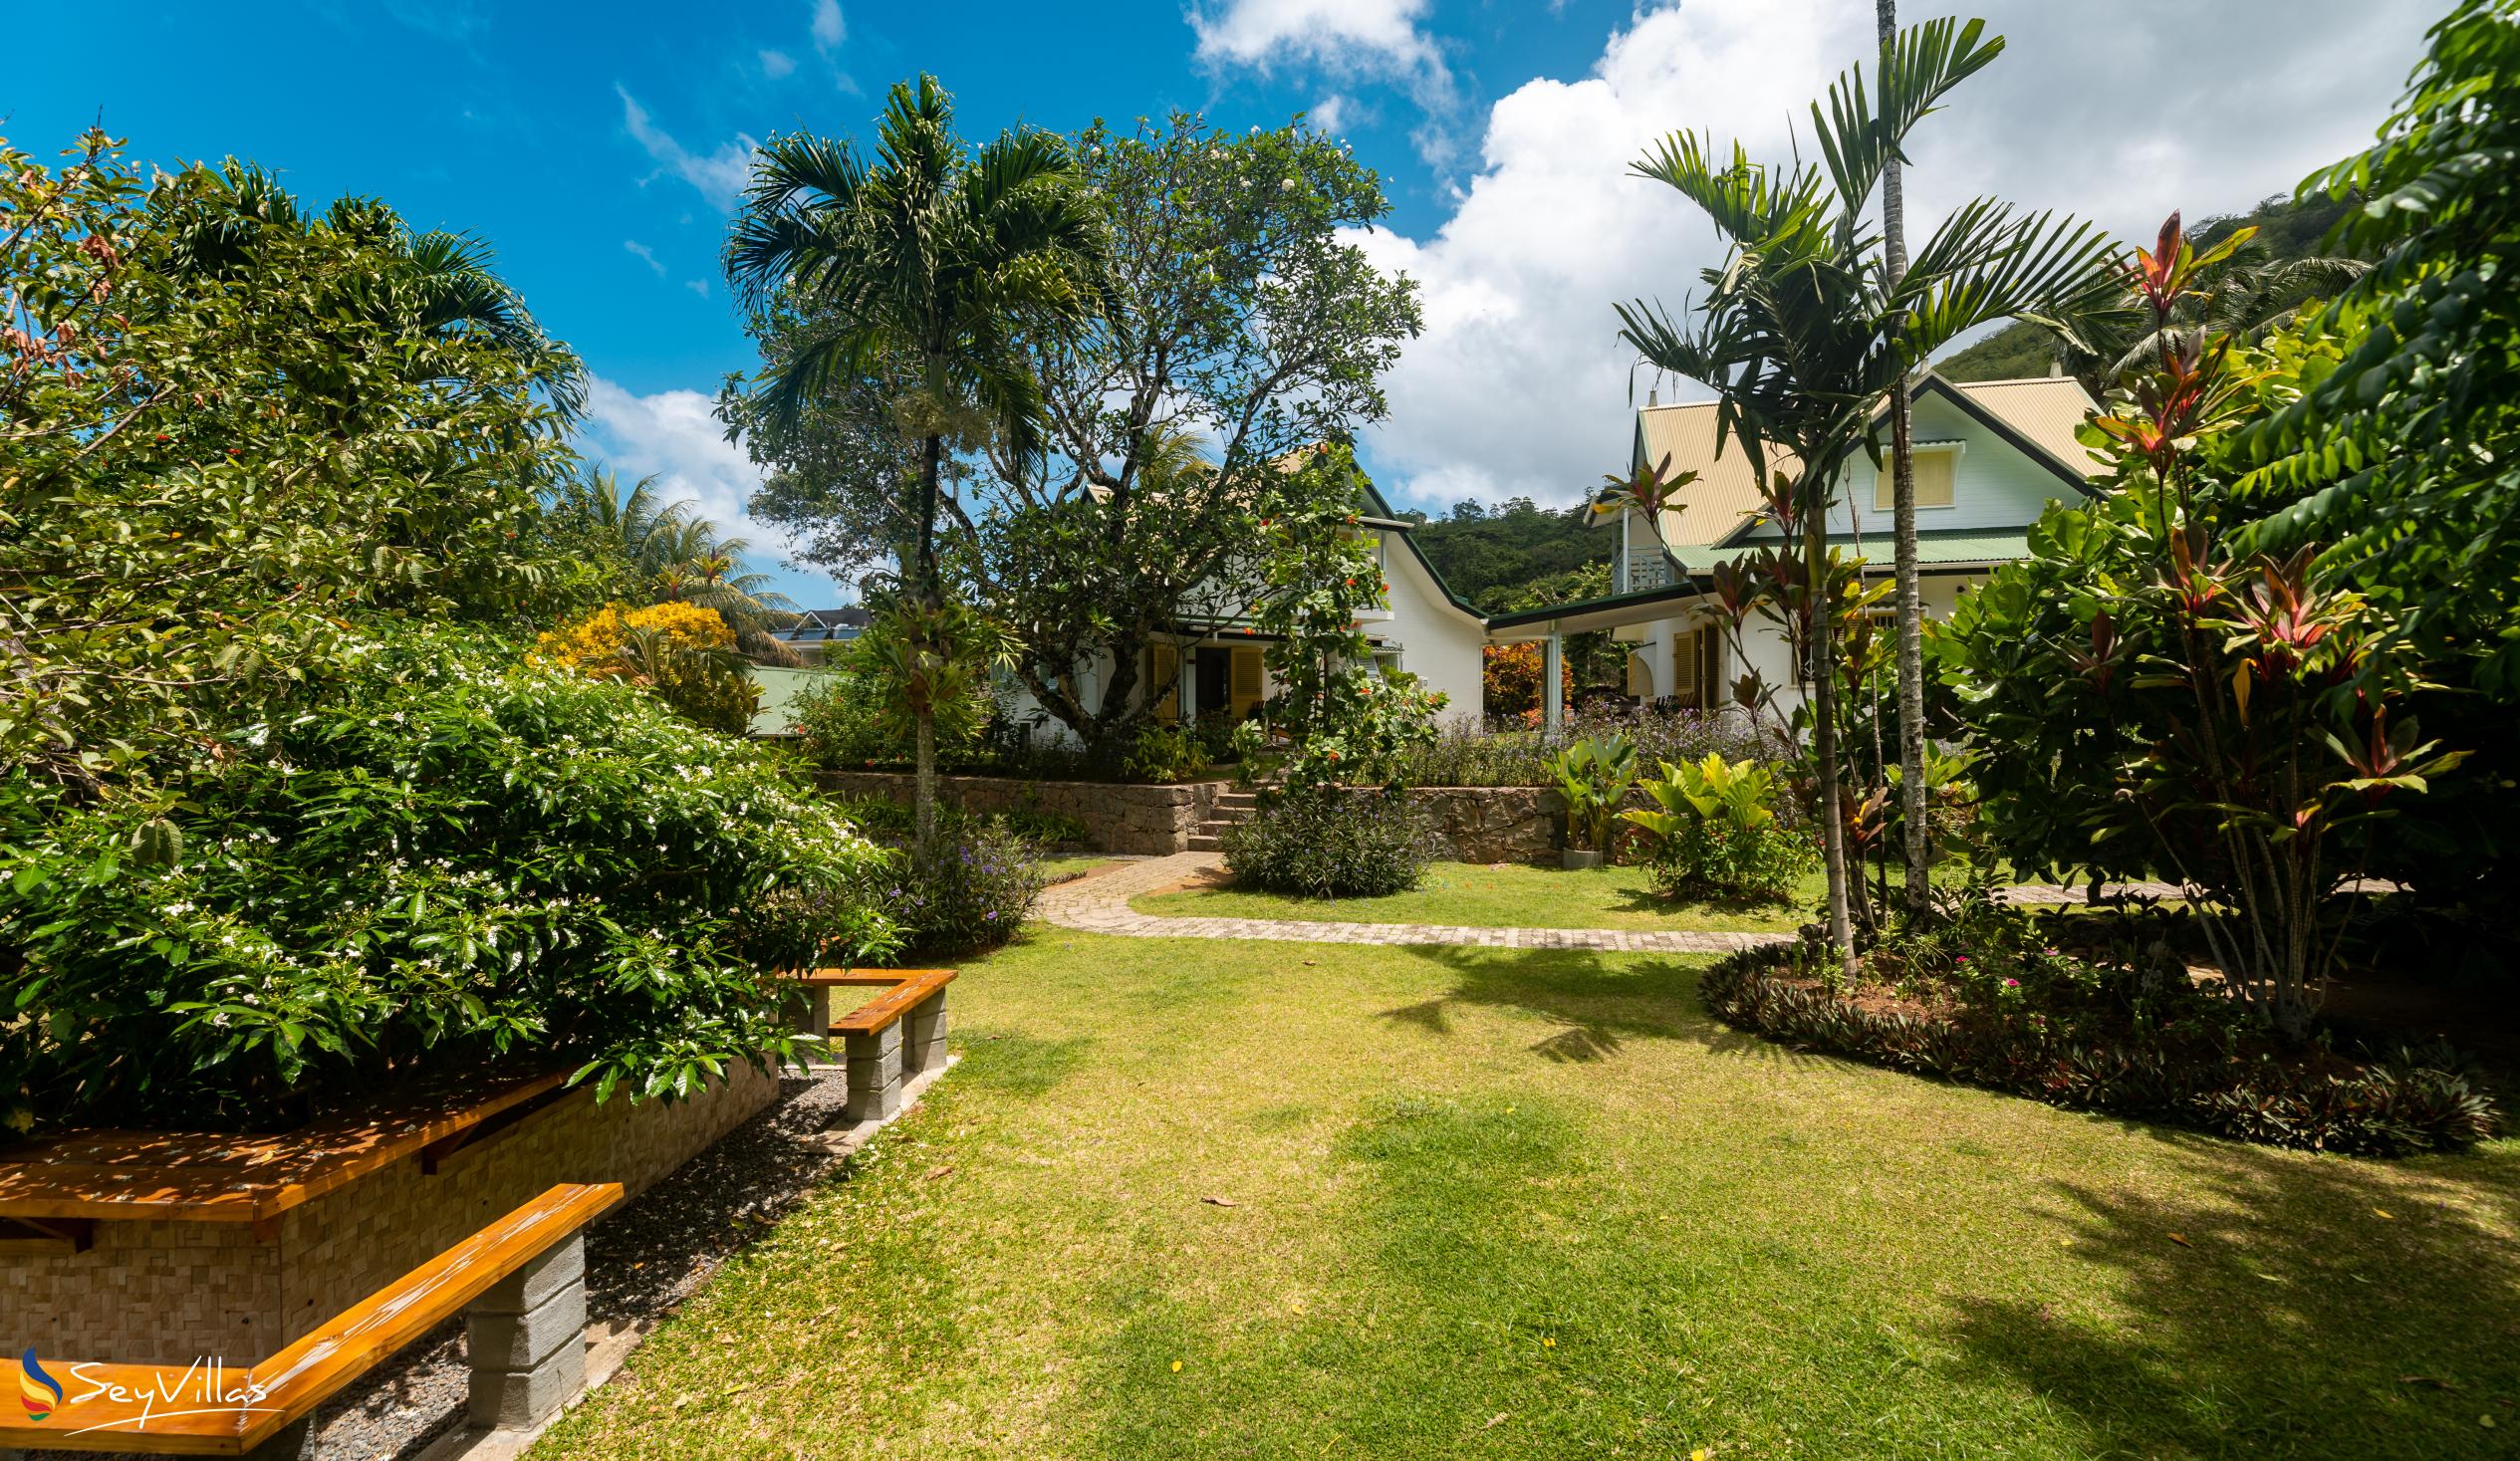 Foto 9: Villa Kordia - Esterno - Mahé (Seychelles)